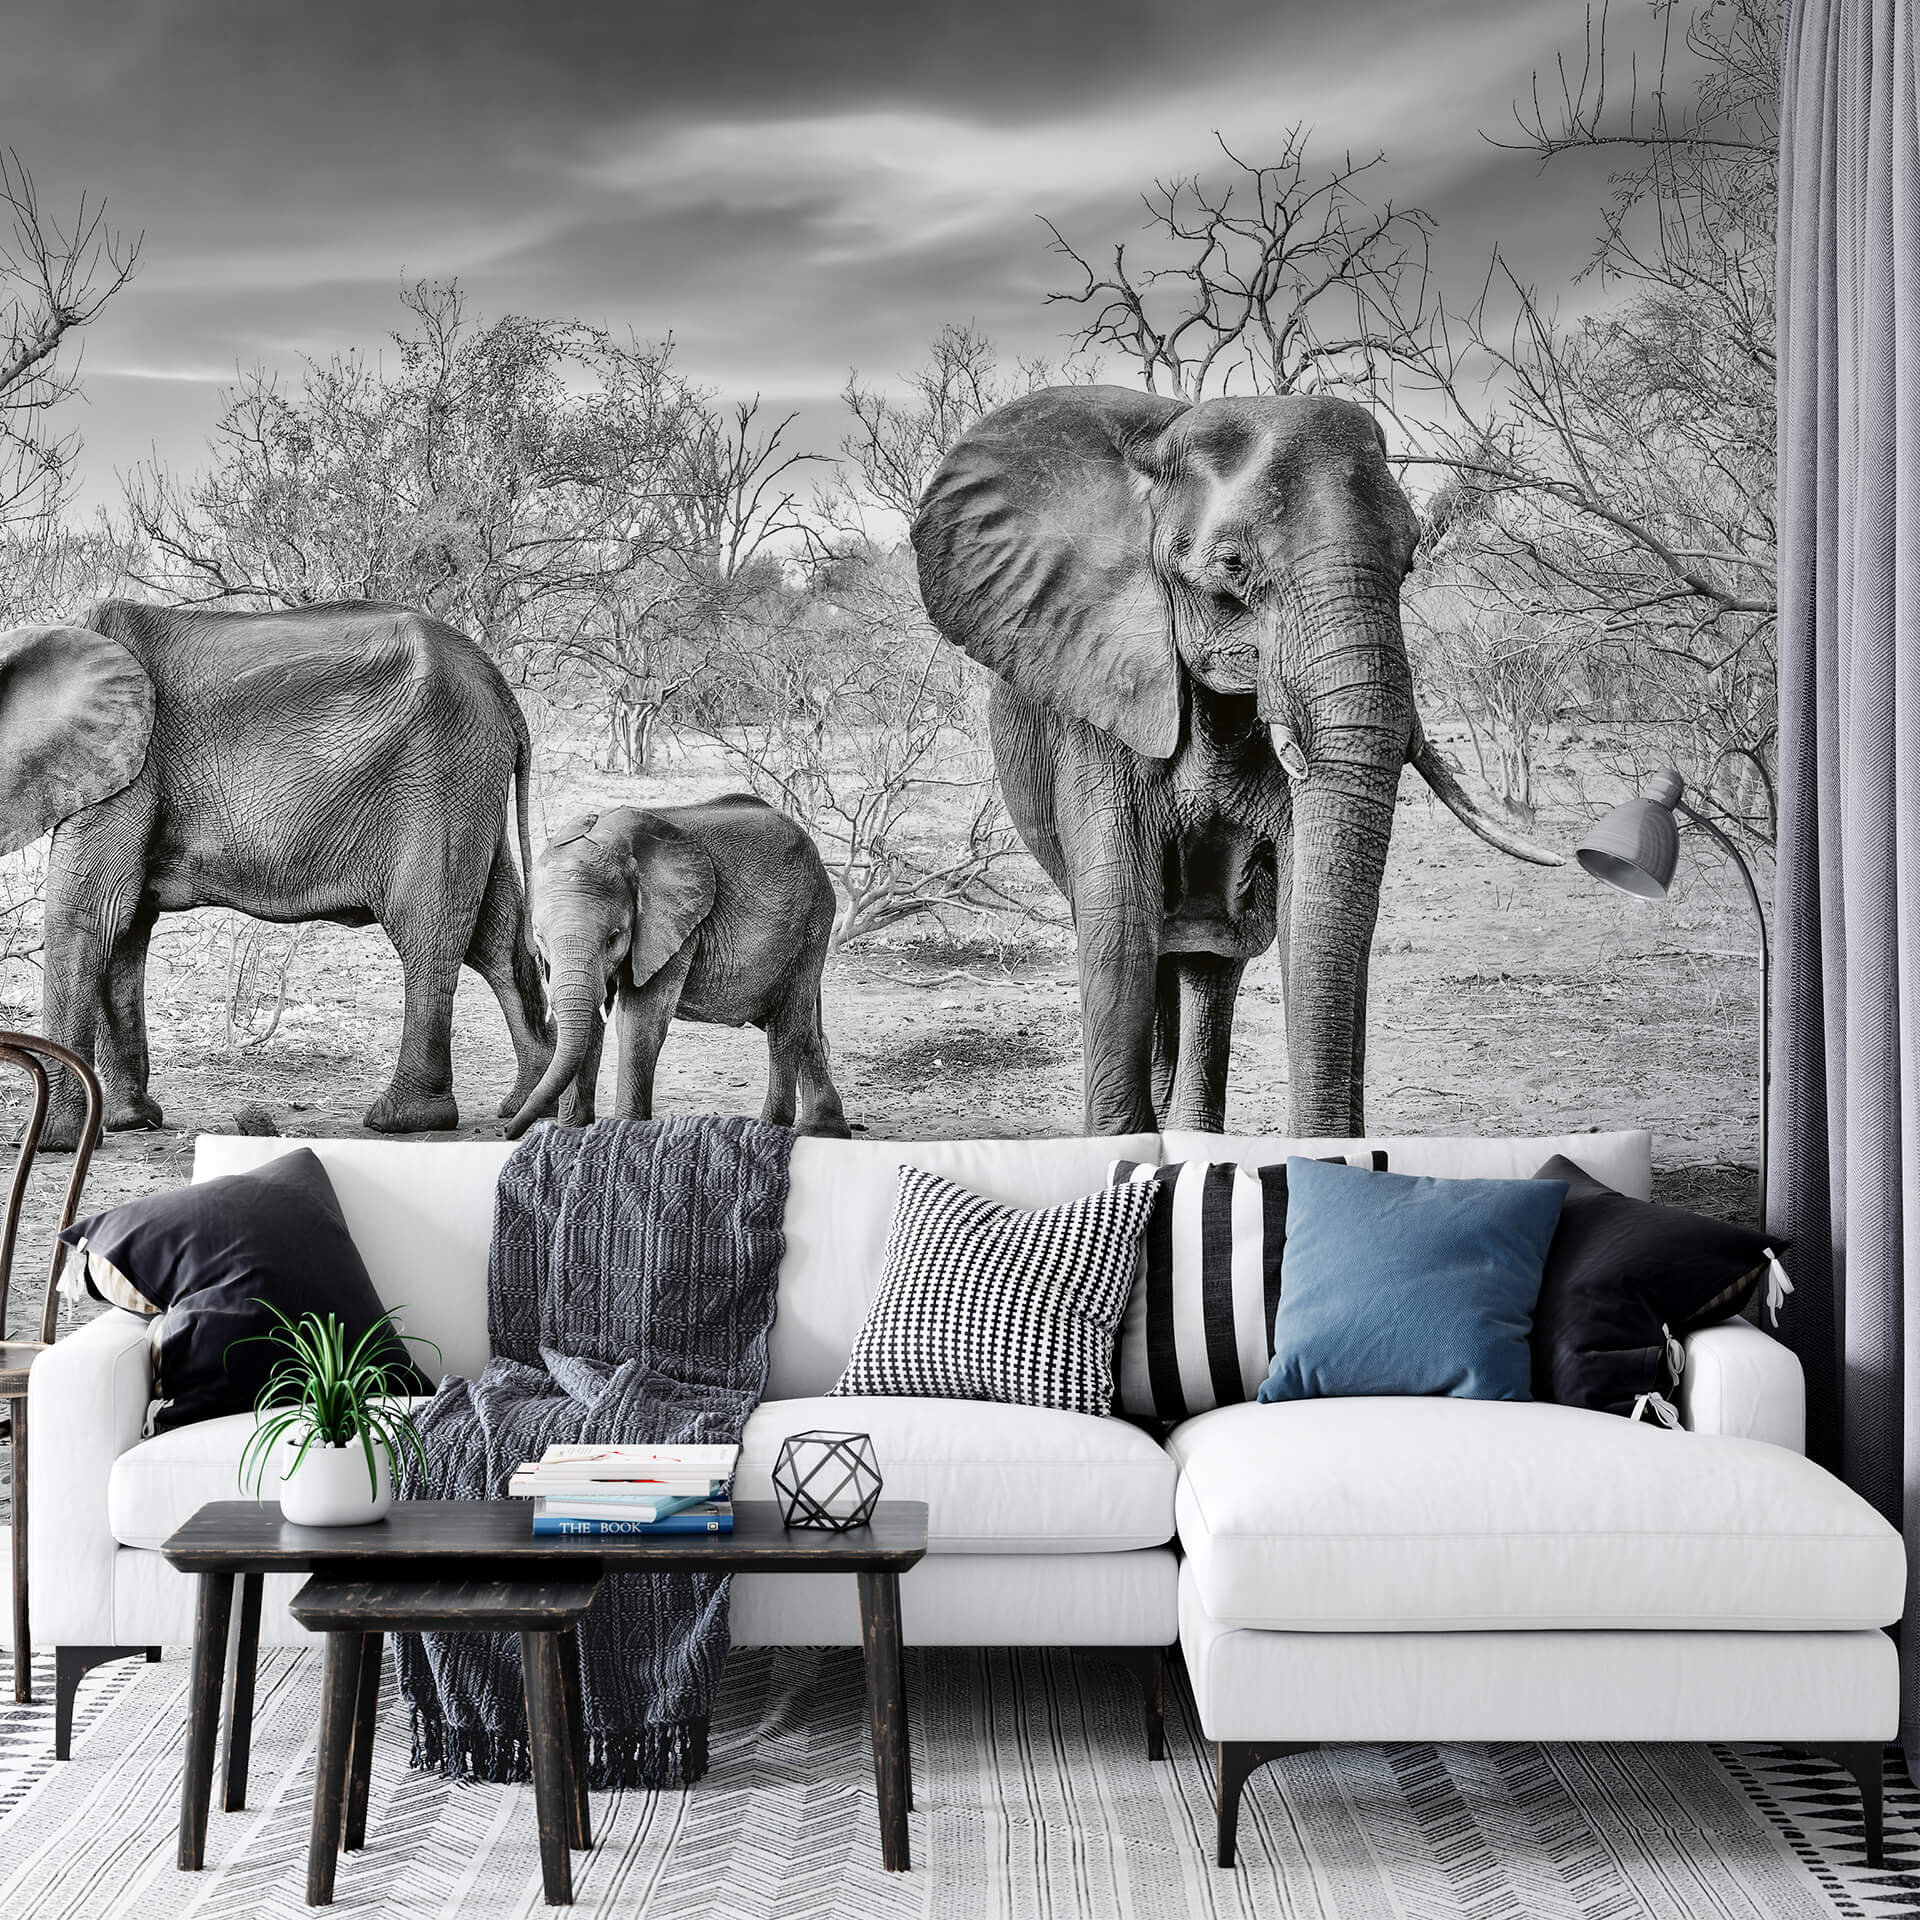 FOTOTAPETE ELEPHANT FAMILY für WOHNZIMMER 3,84 x 2,60 m (9,98 m²)